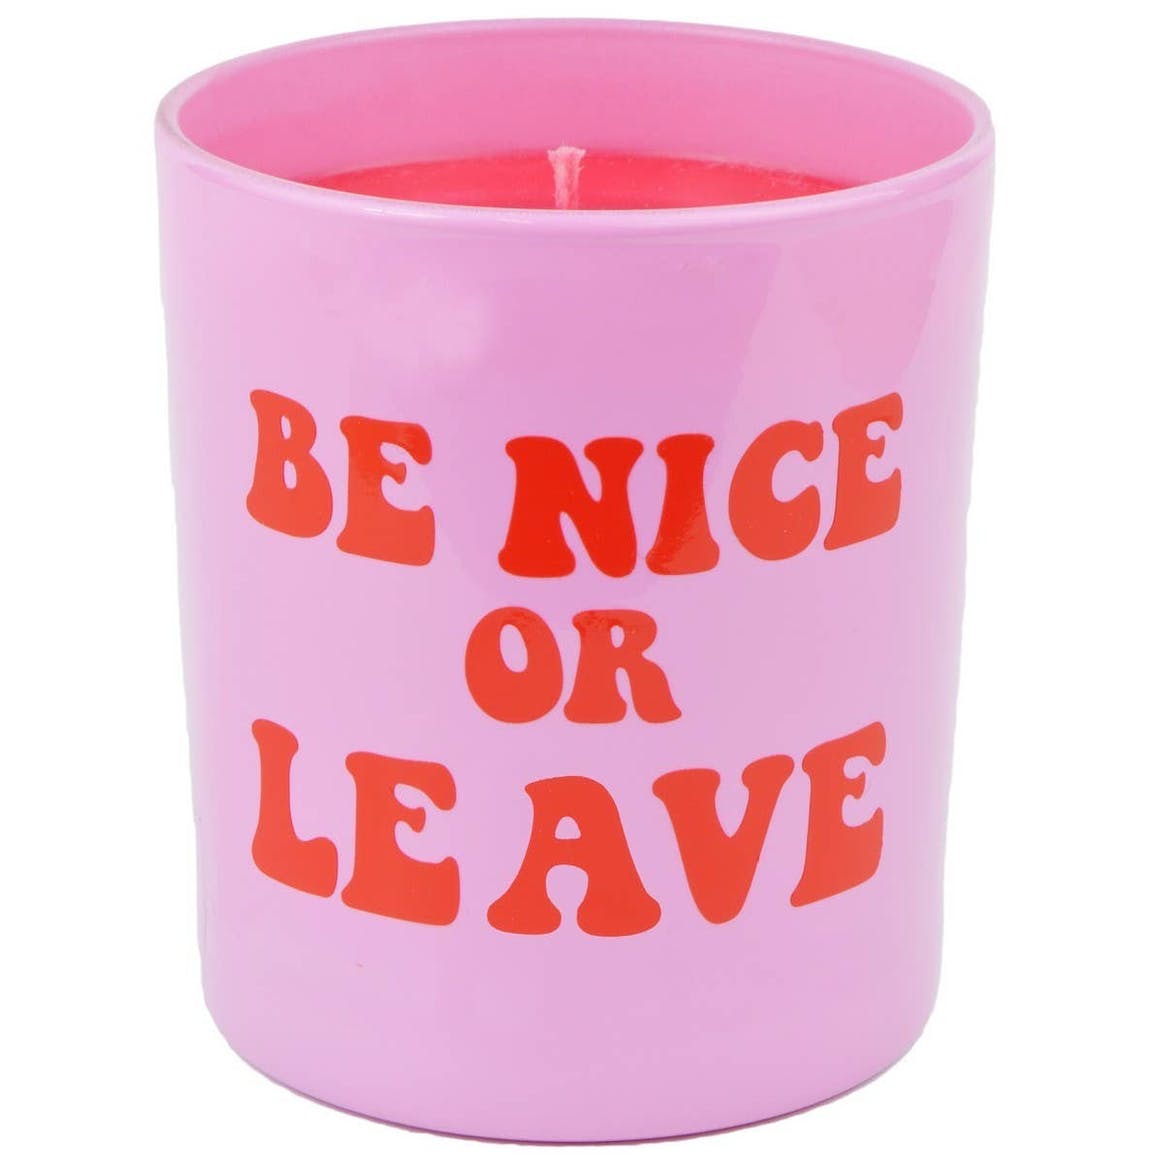 Kerze "Be nice or leave"